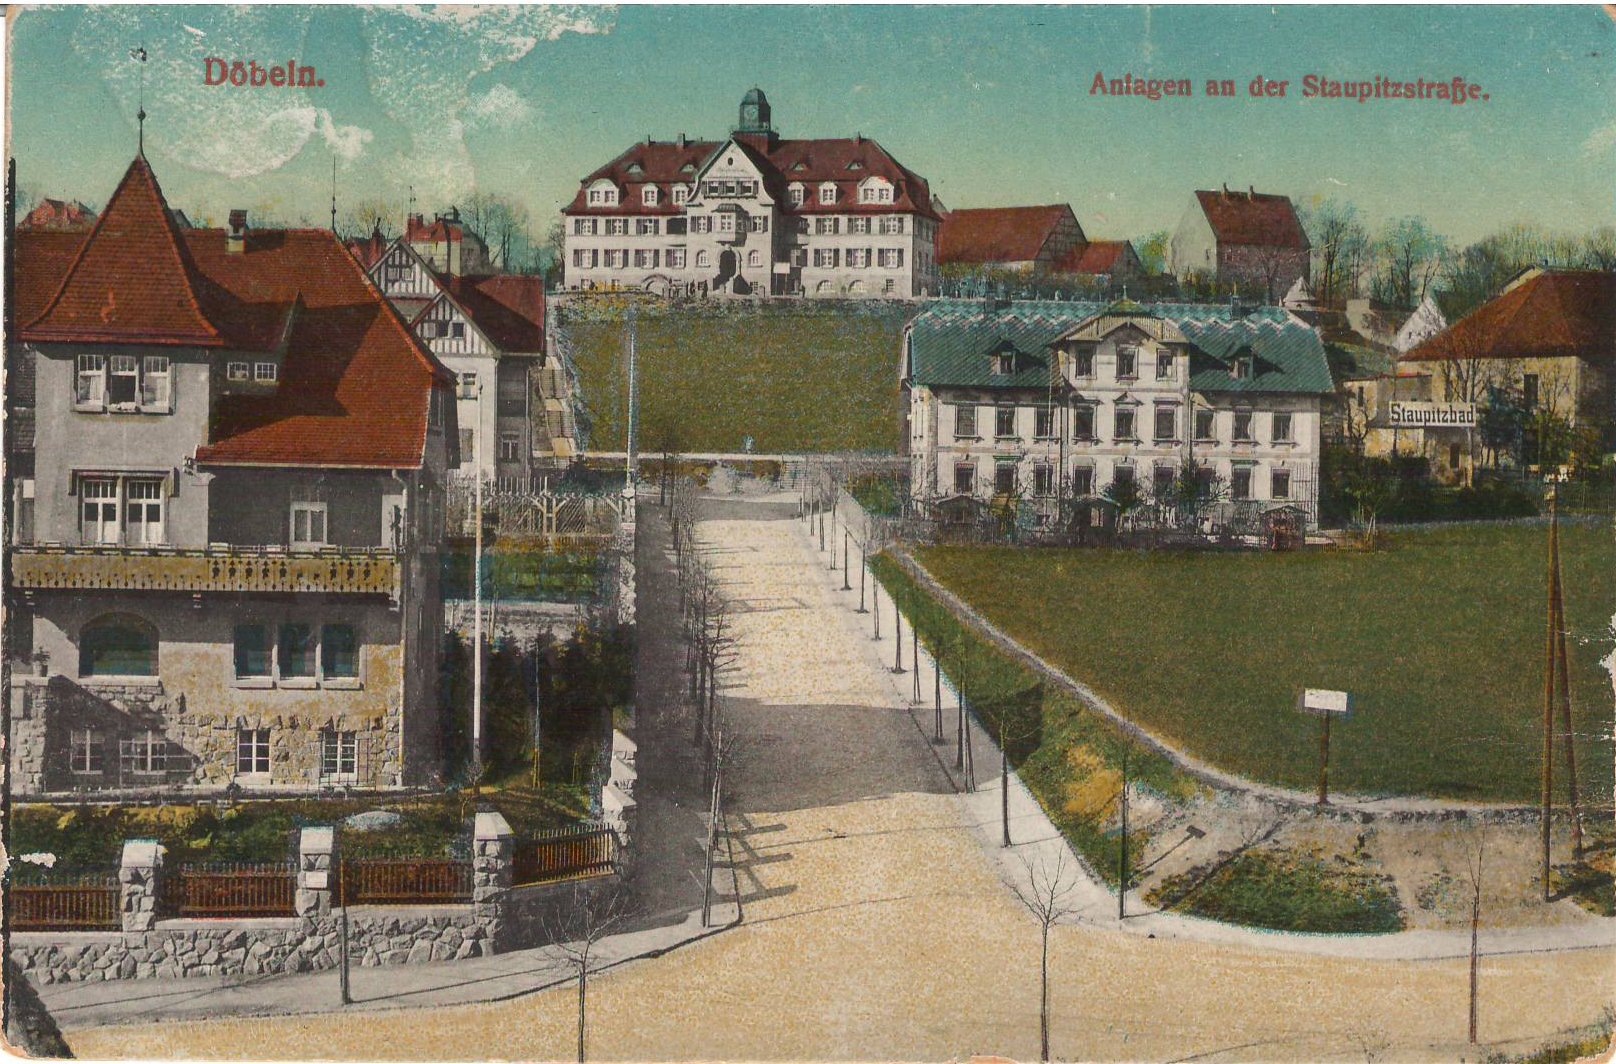 Ansichtspostkarte Döbeln: Anlagen an der Staupitzstraße (Stadtmuseum / Kleine Galerie Döbeln CC BY-NC-SA)